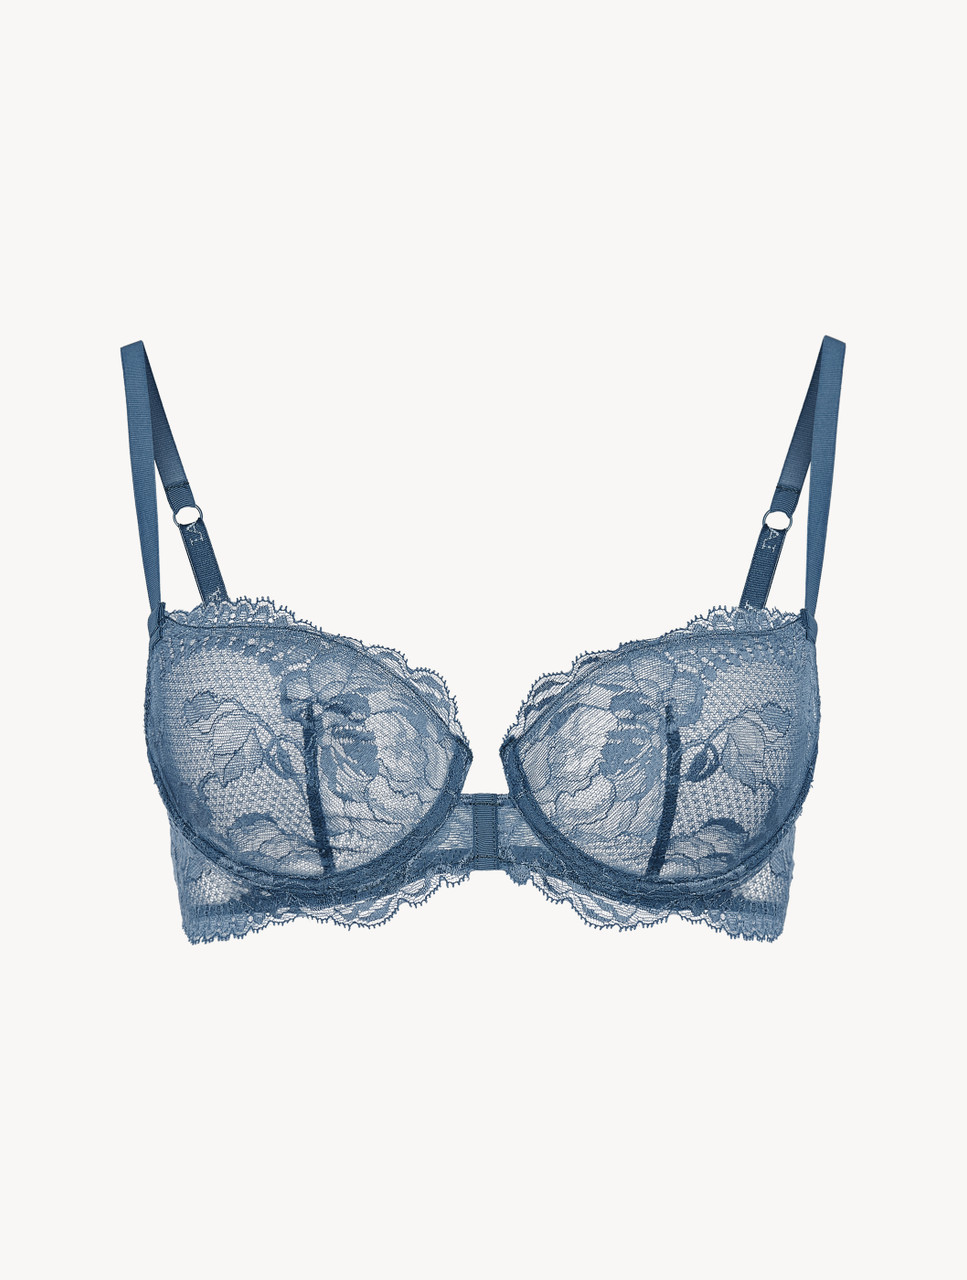 Buy online Marine Blue Balconette Bra & Panty Set from lingerie for Women  by Inner Sense for ₹869 at 0% off